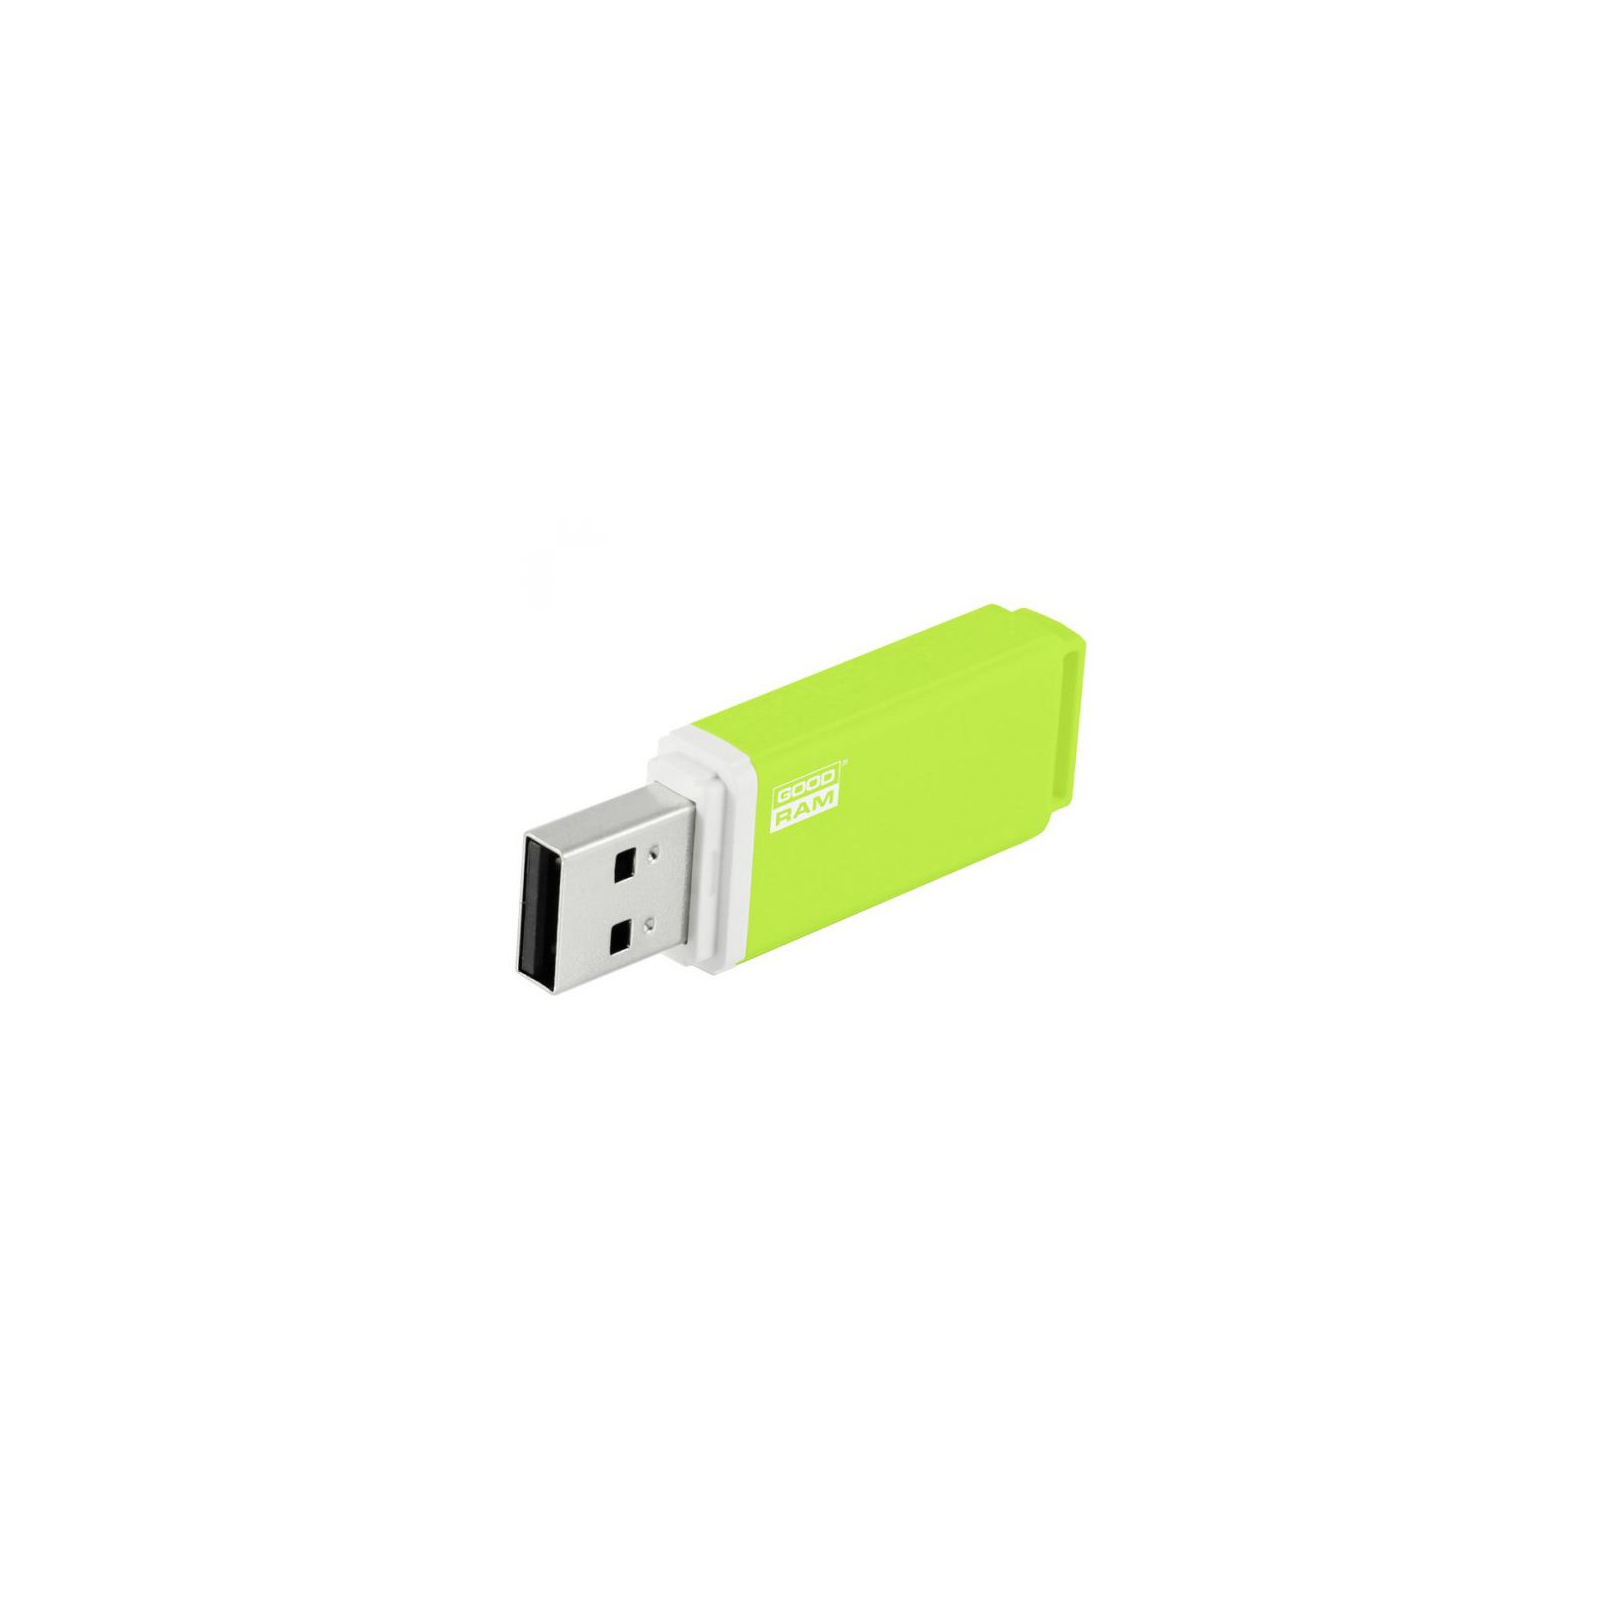 USB флеш накопитель Goodram 64GB UMO2 Orange Green USB 2.0 (UMO2-0640OGR11) изображение 5